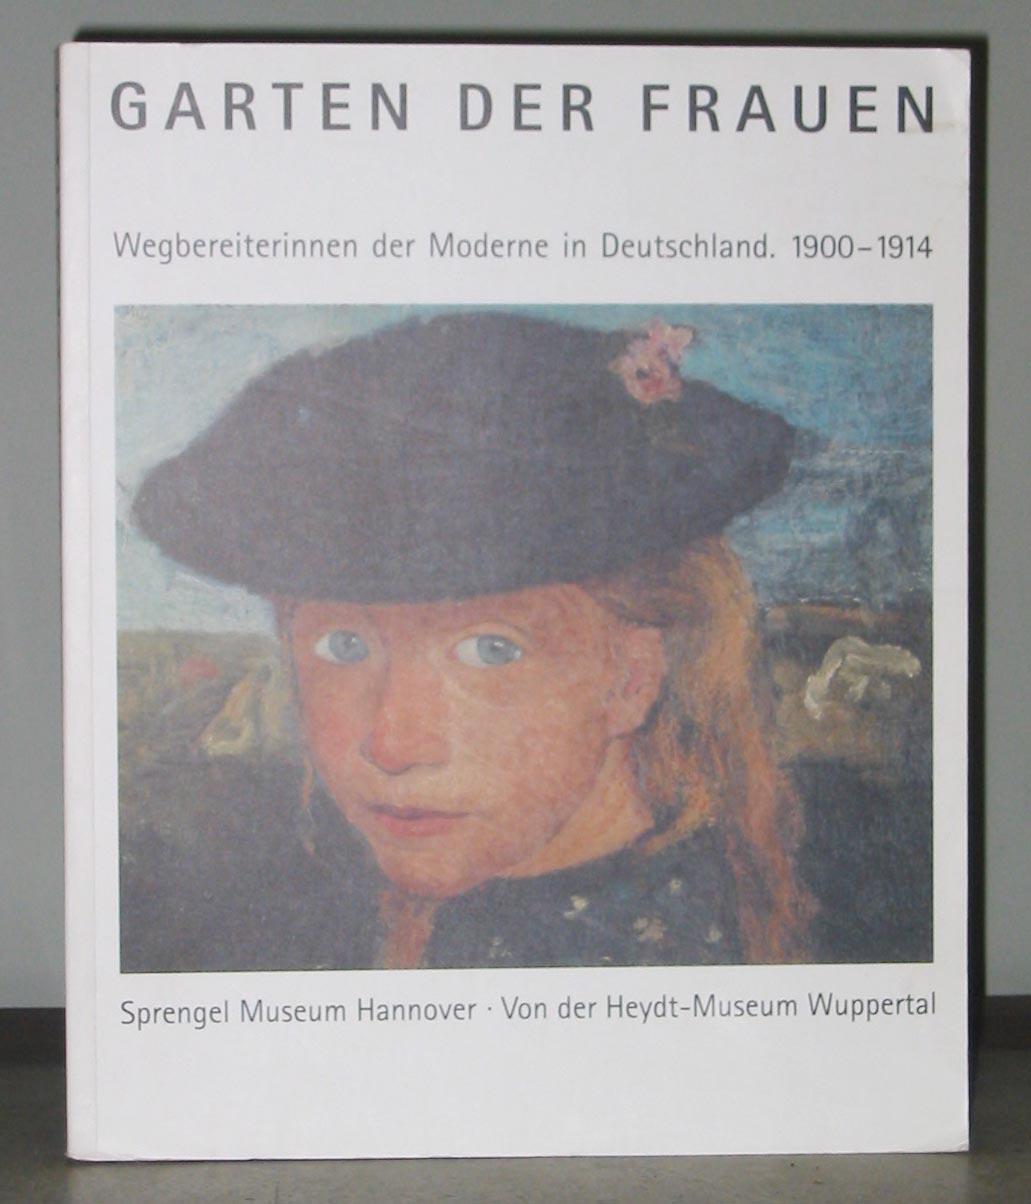 Garten Der Frauen: Wegbereiterinnen Der Moderne in Deutschland, 1900-1914 - Krempel, Ulrich;Meyer-Buser, Susanne; Schade, Sigrid; Berger, Renate; Fehlemann, Sabine; and Others